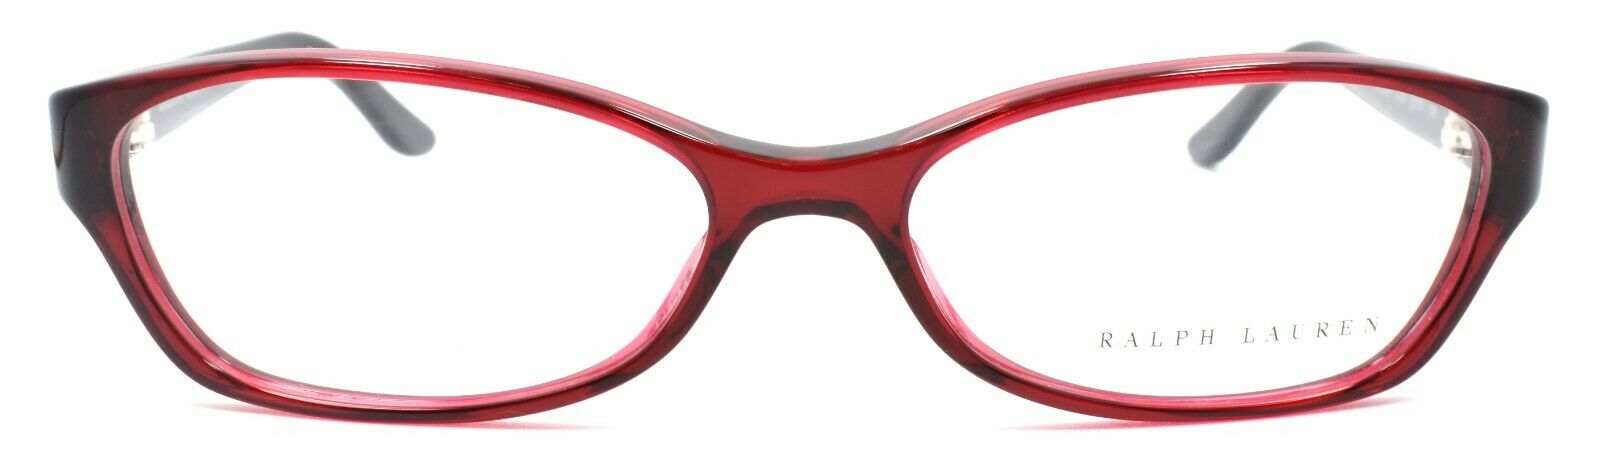 2-Ralph Lauren RL 6068 5008 Women's Eyeglasses Frames 53-15-130 Transparent Red-713132364857-IKSpecs